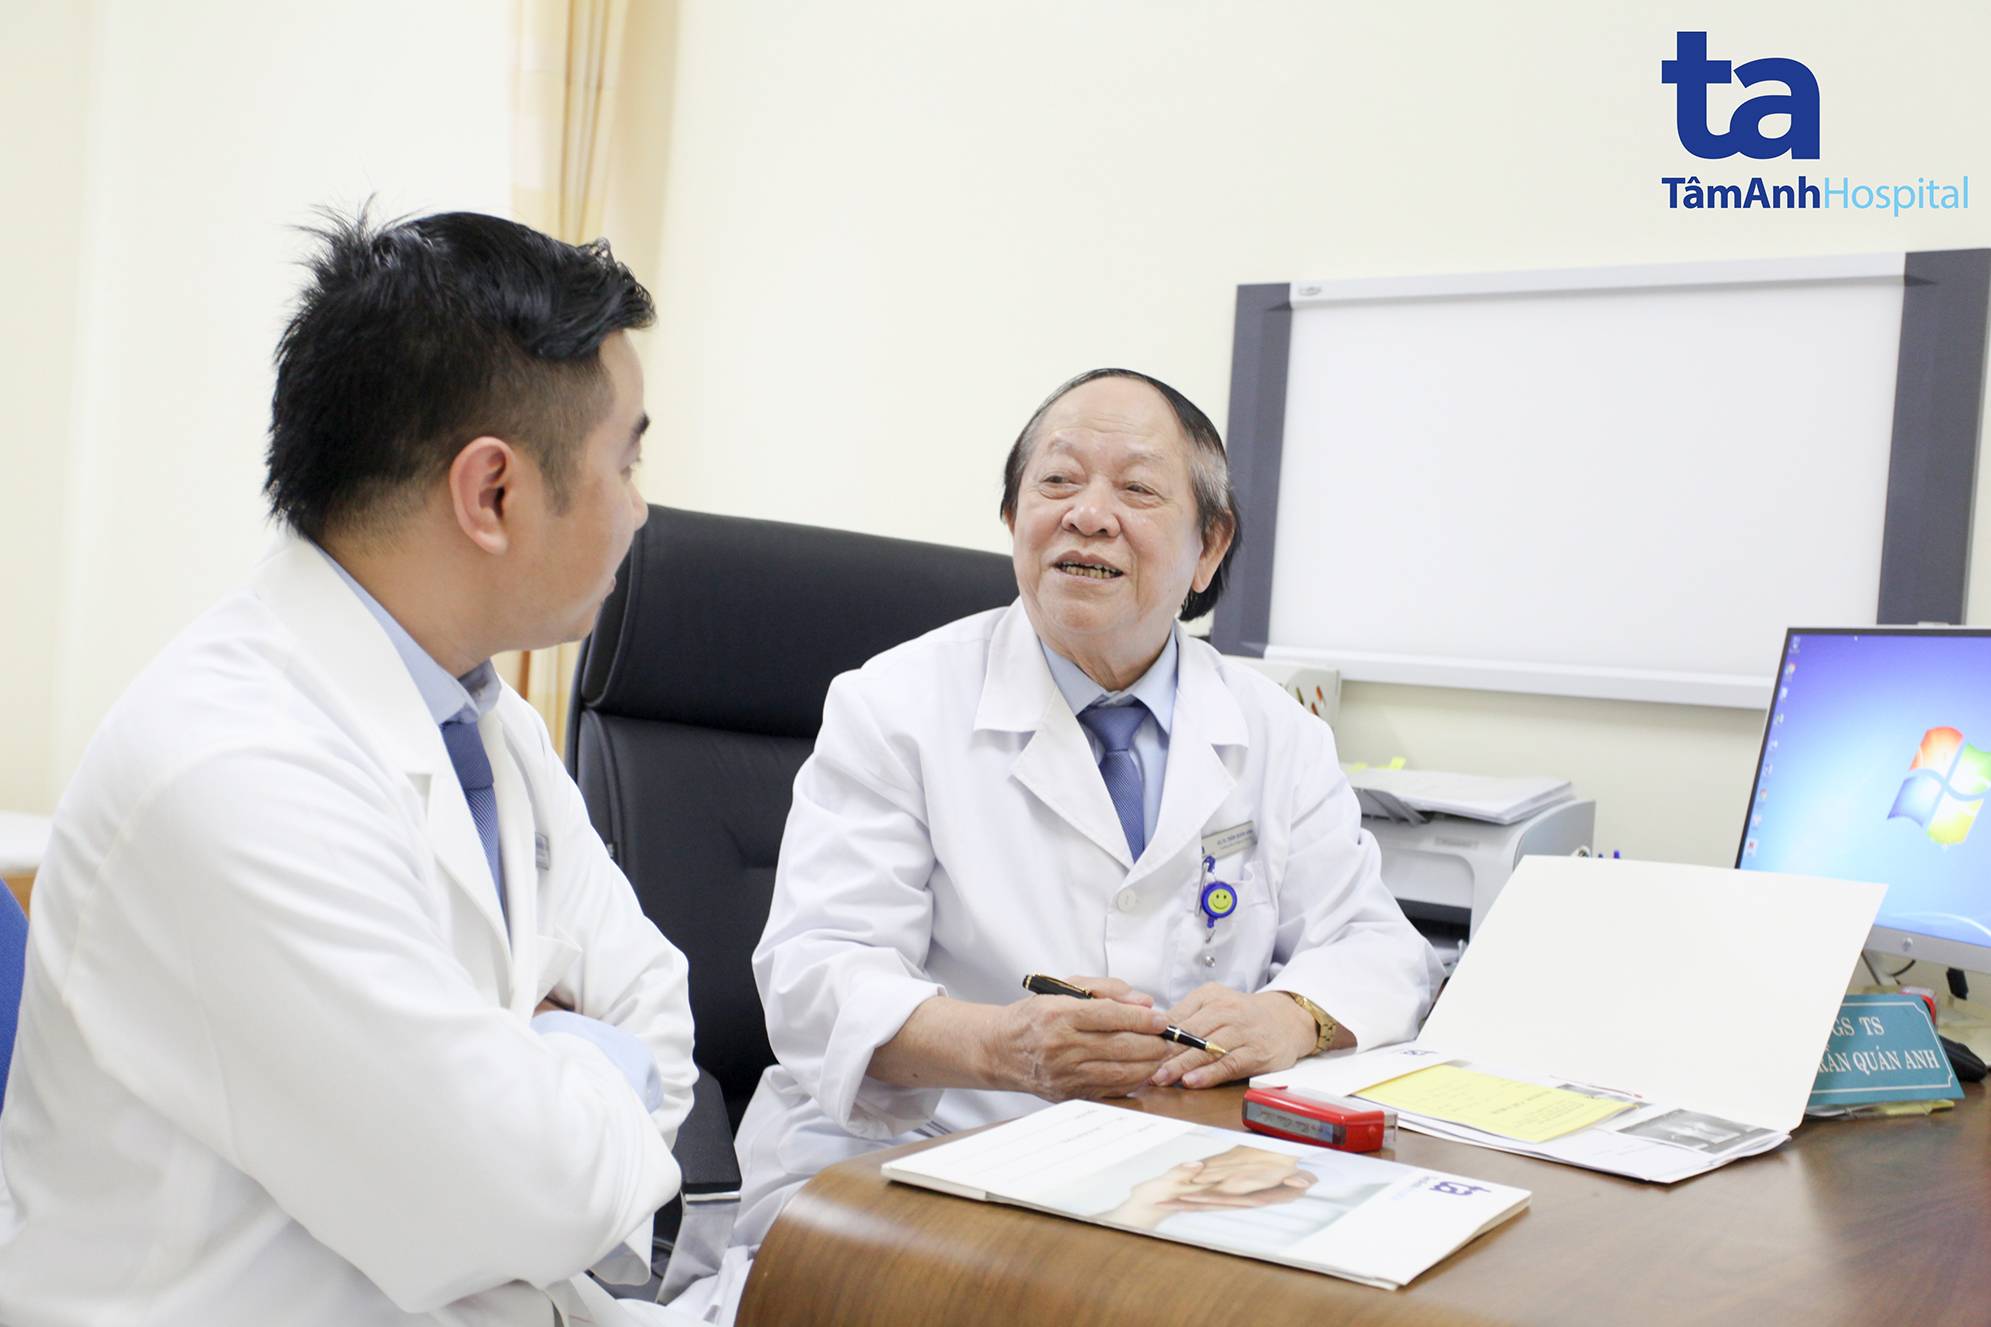 Giáo sư Trần Quán Anh và bác sĩ Nguyễn Ngọc Tân, khoa Tiết niệu - Nam học cùng trao đổi sau khi thăm khám cho bệnh nhân N.V.A